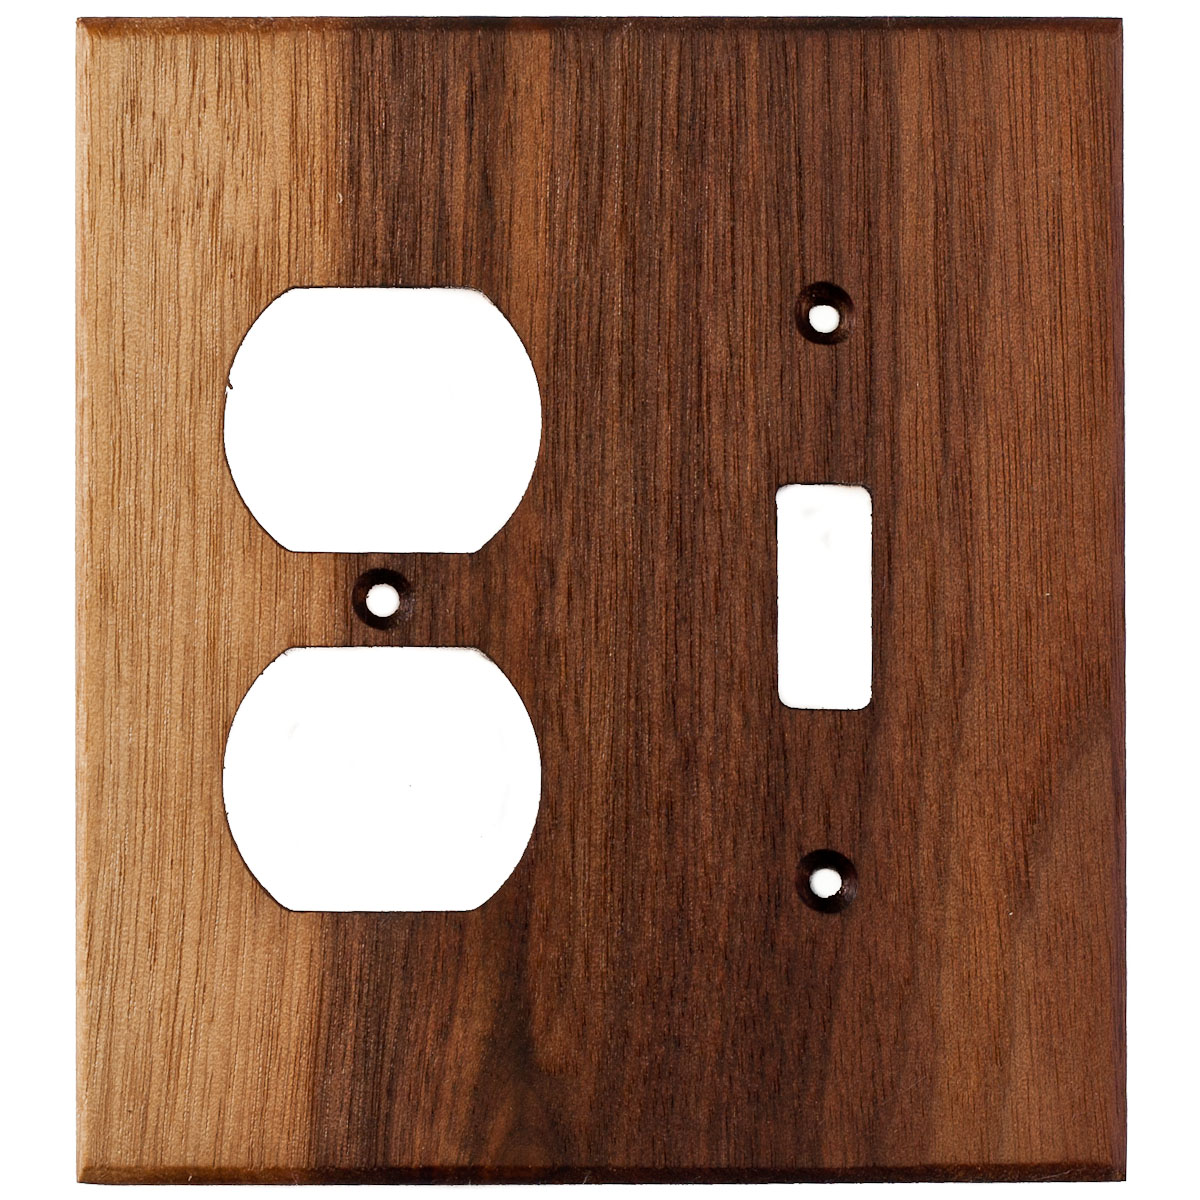 https://www.virgintimberlumber.com/wp-content/uploads/2022/06/black-walnut-wood-wall-plate-2gang-combo-light-switch-duplex-outlet-cover.jpg